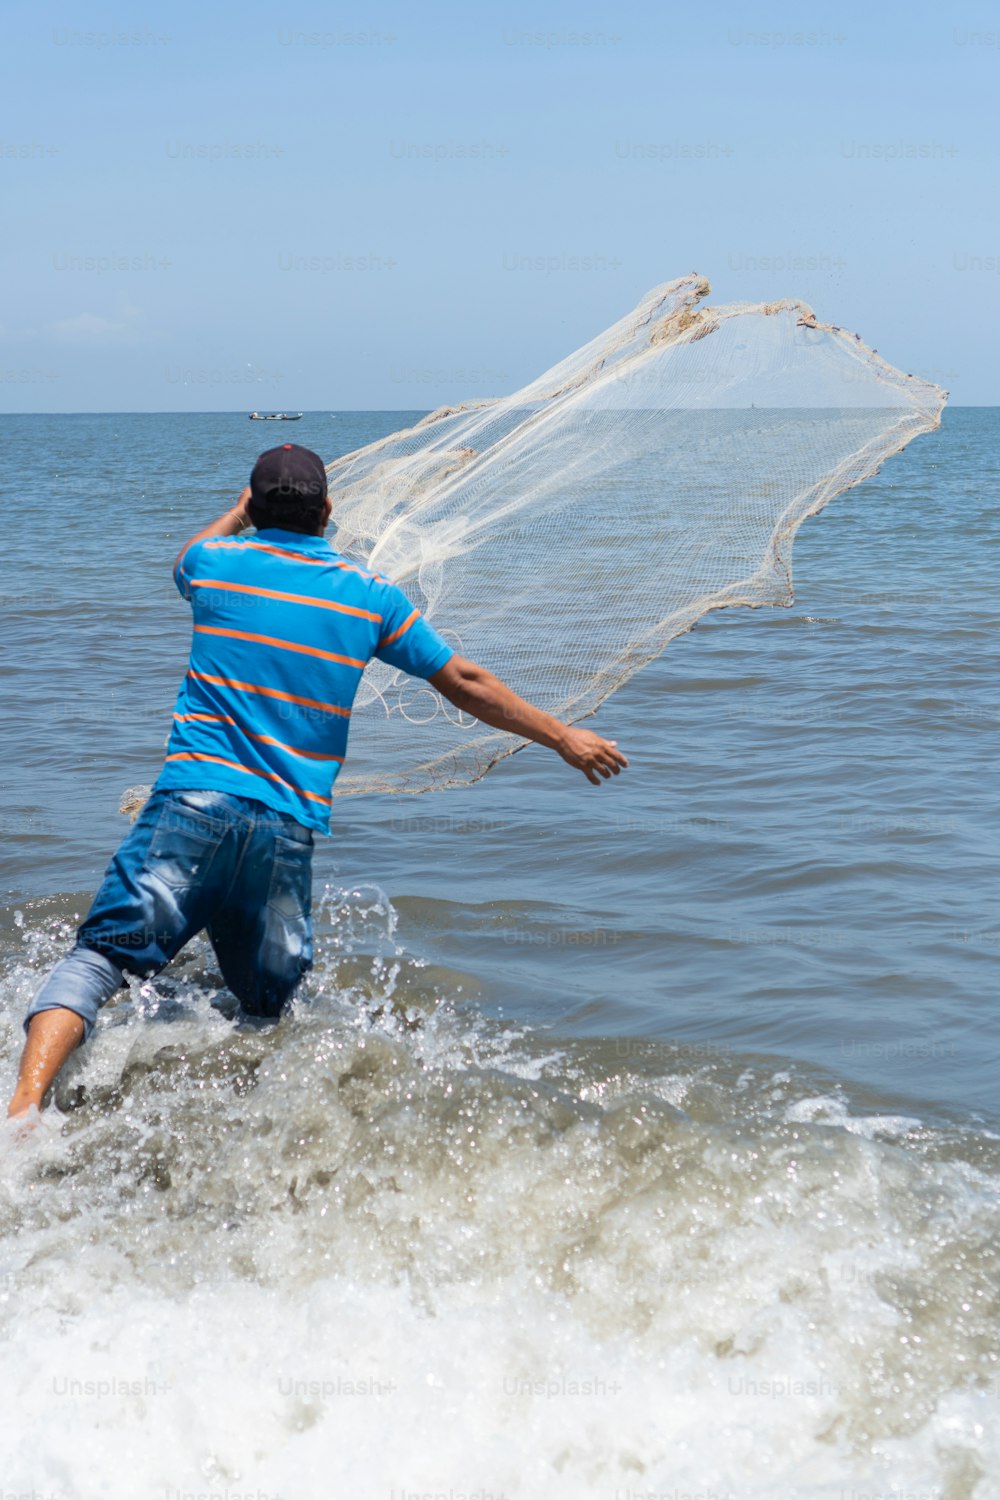 Pescador na praia lançando uma rede de pesca